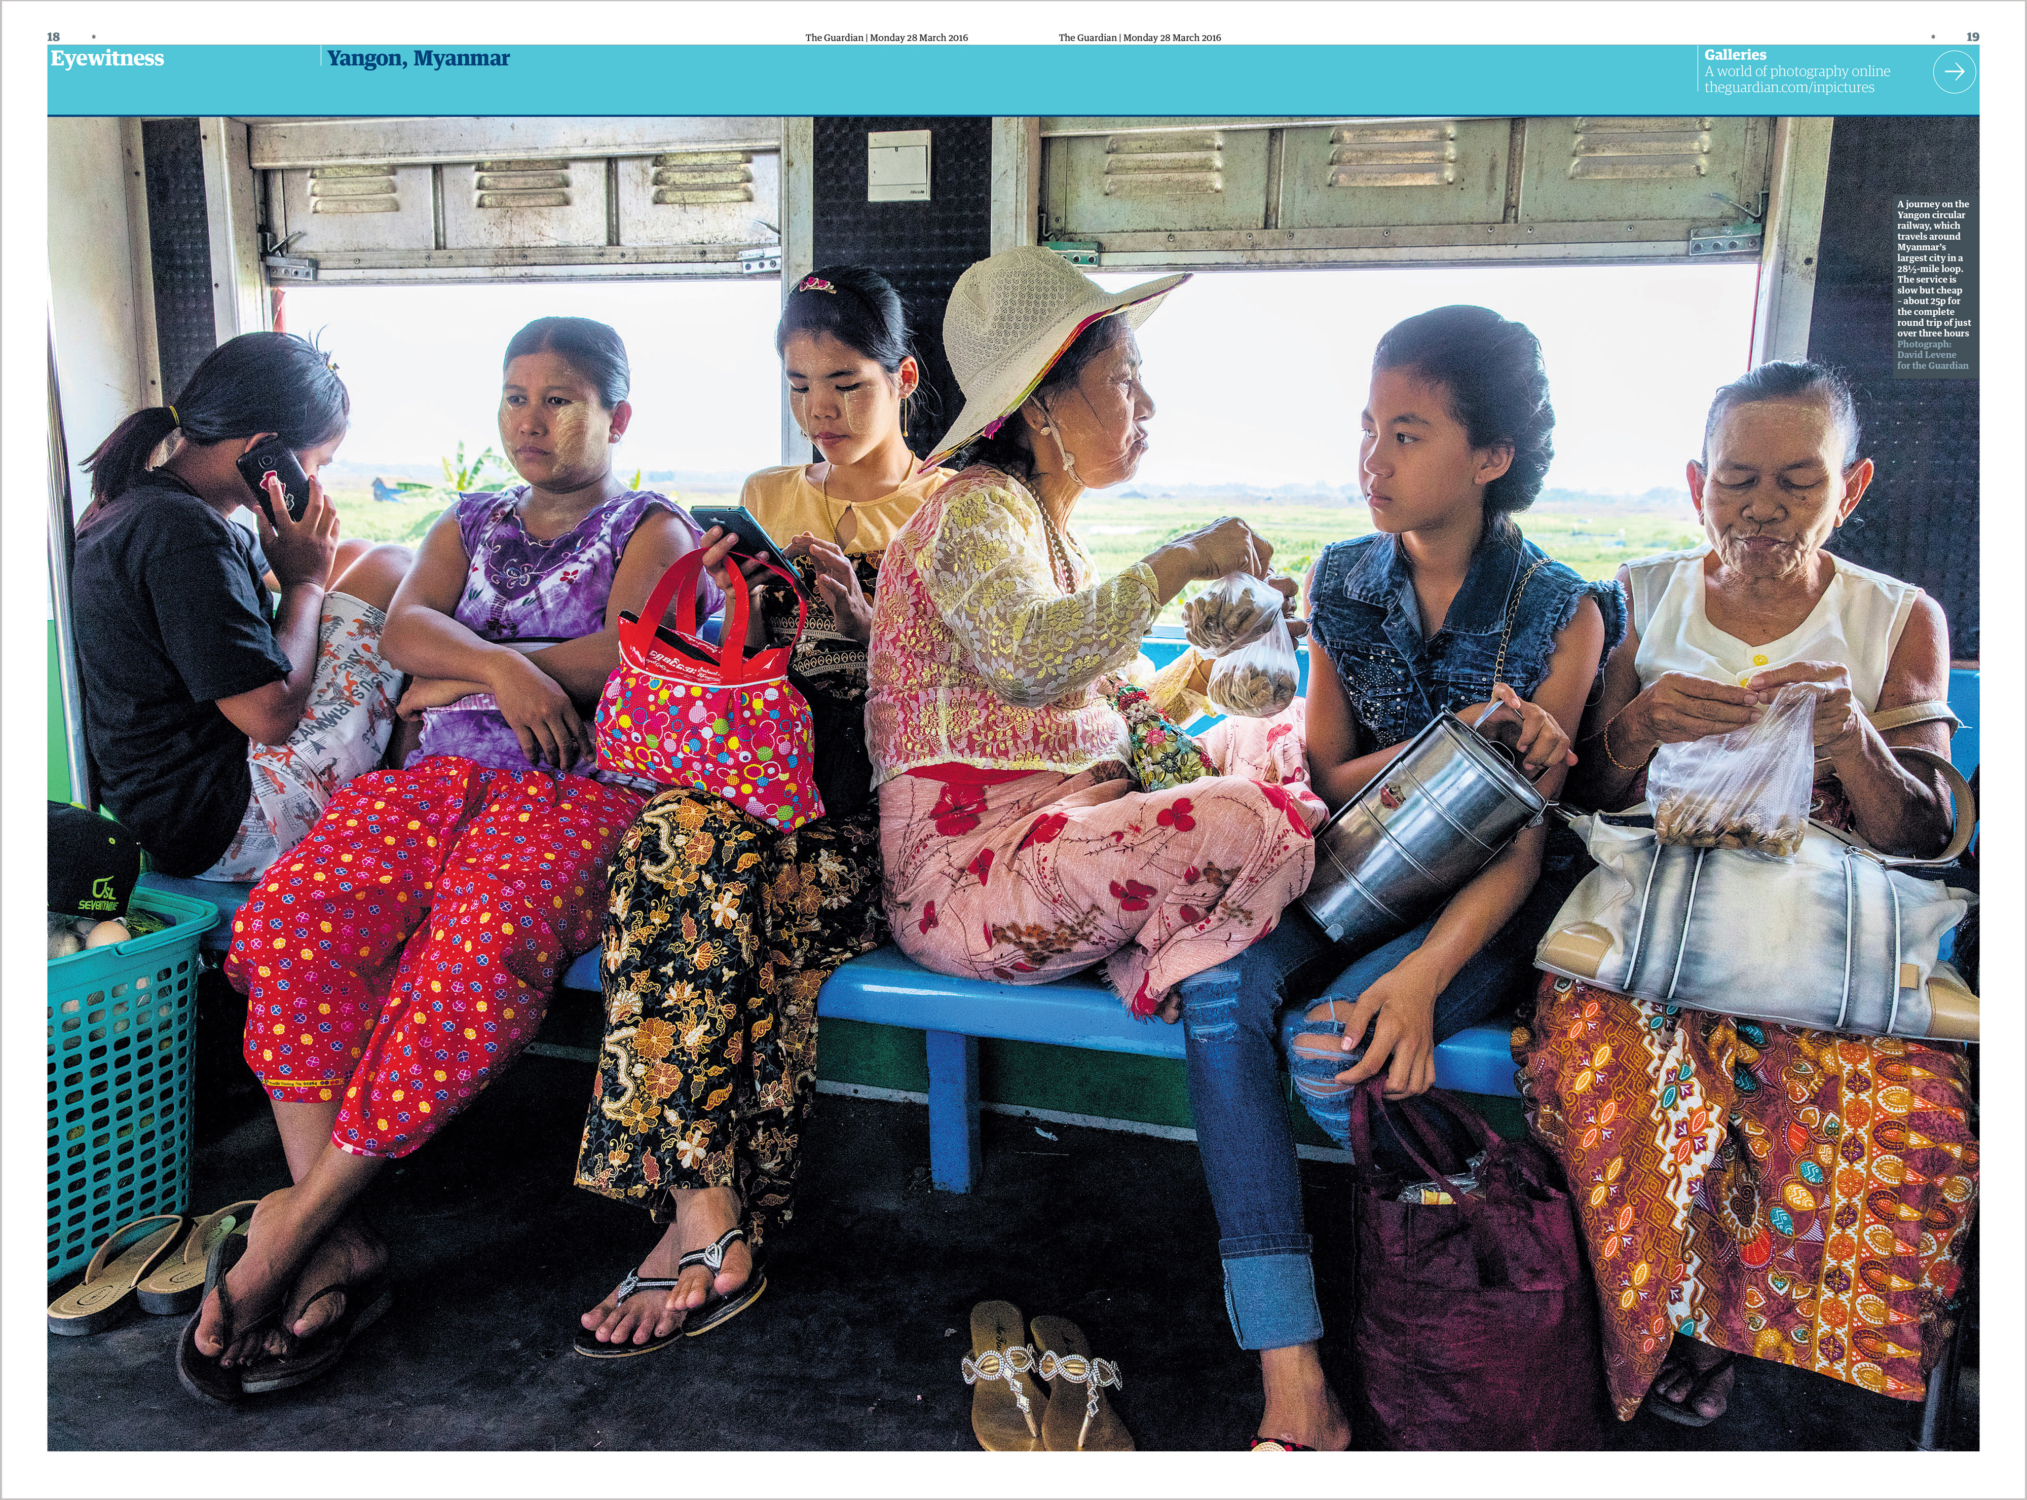 Yangon, Myanmar, David Levene Photography